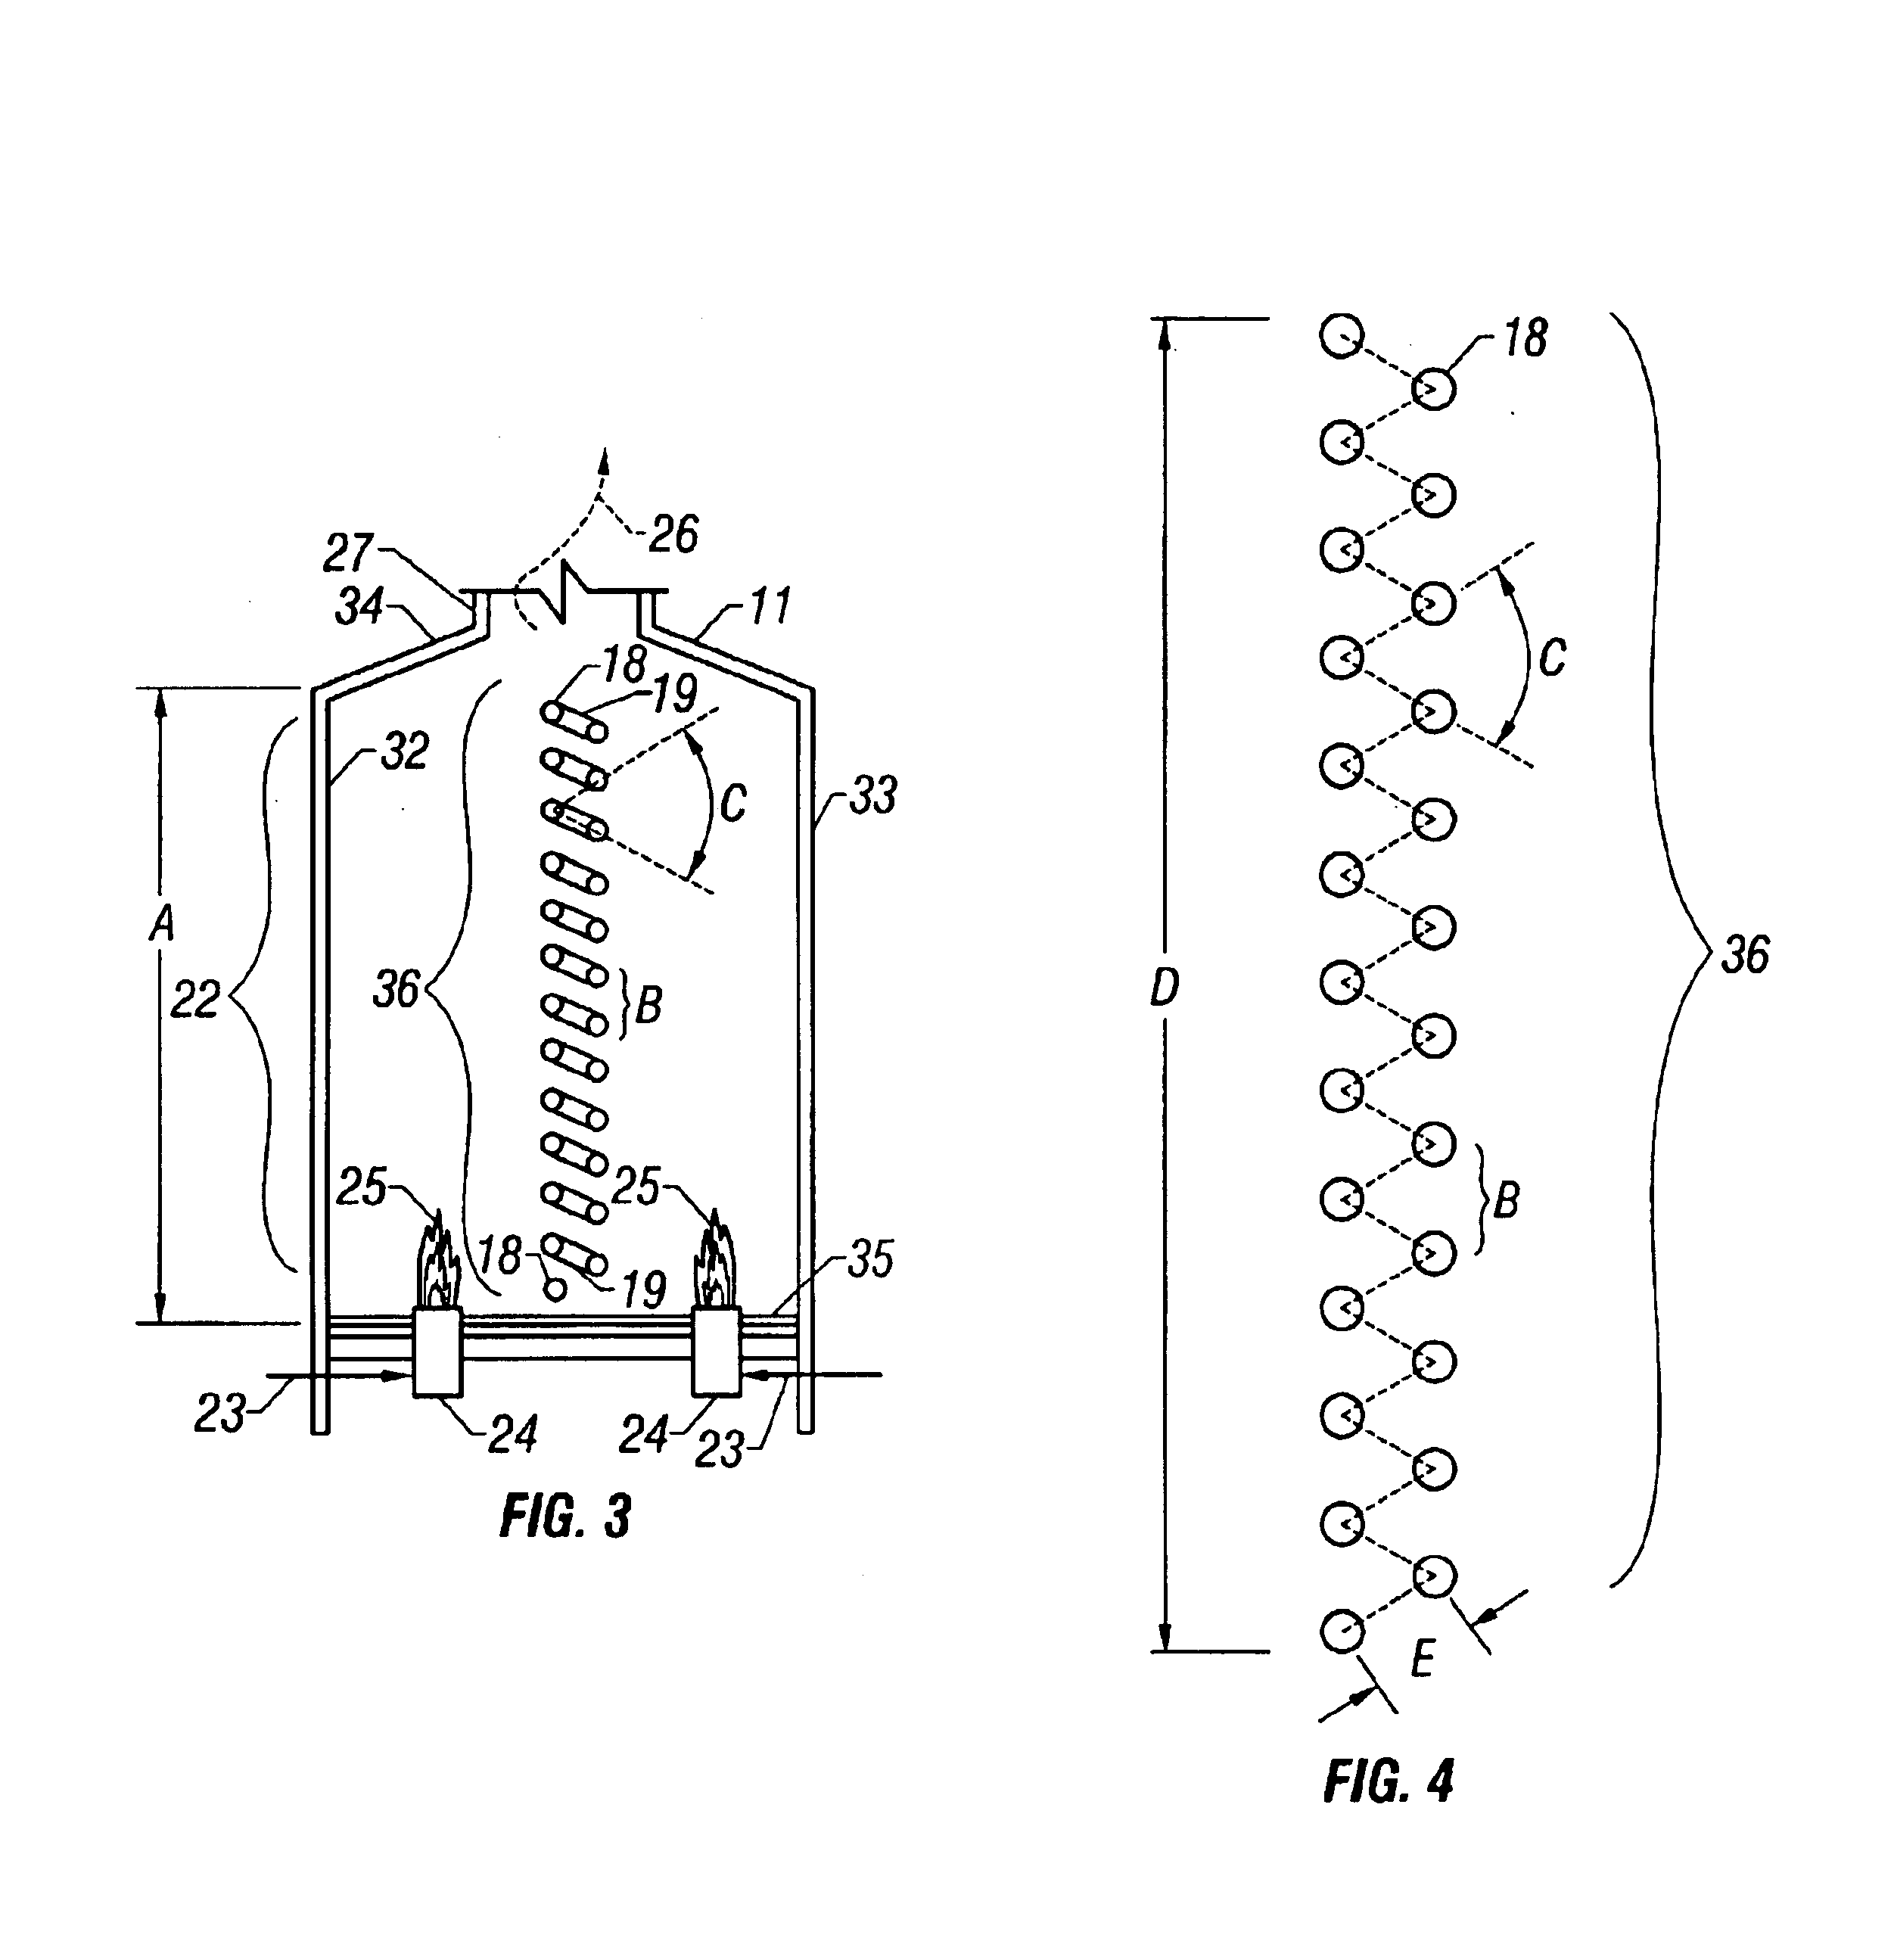 Alternate coke furnace tube arrangement